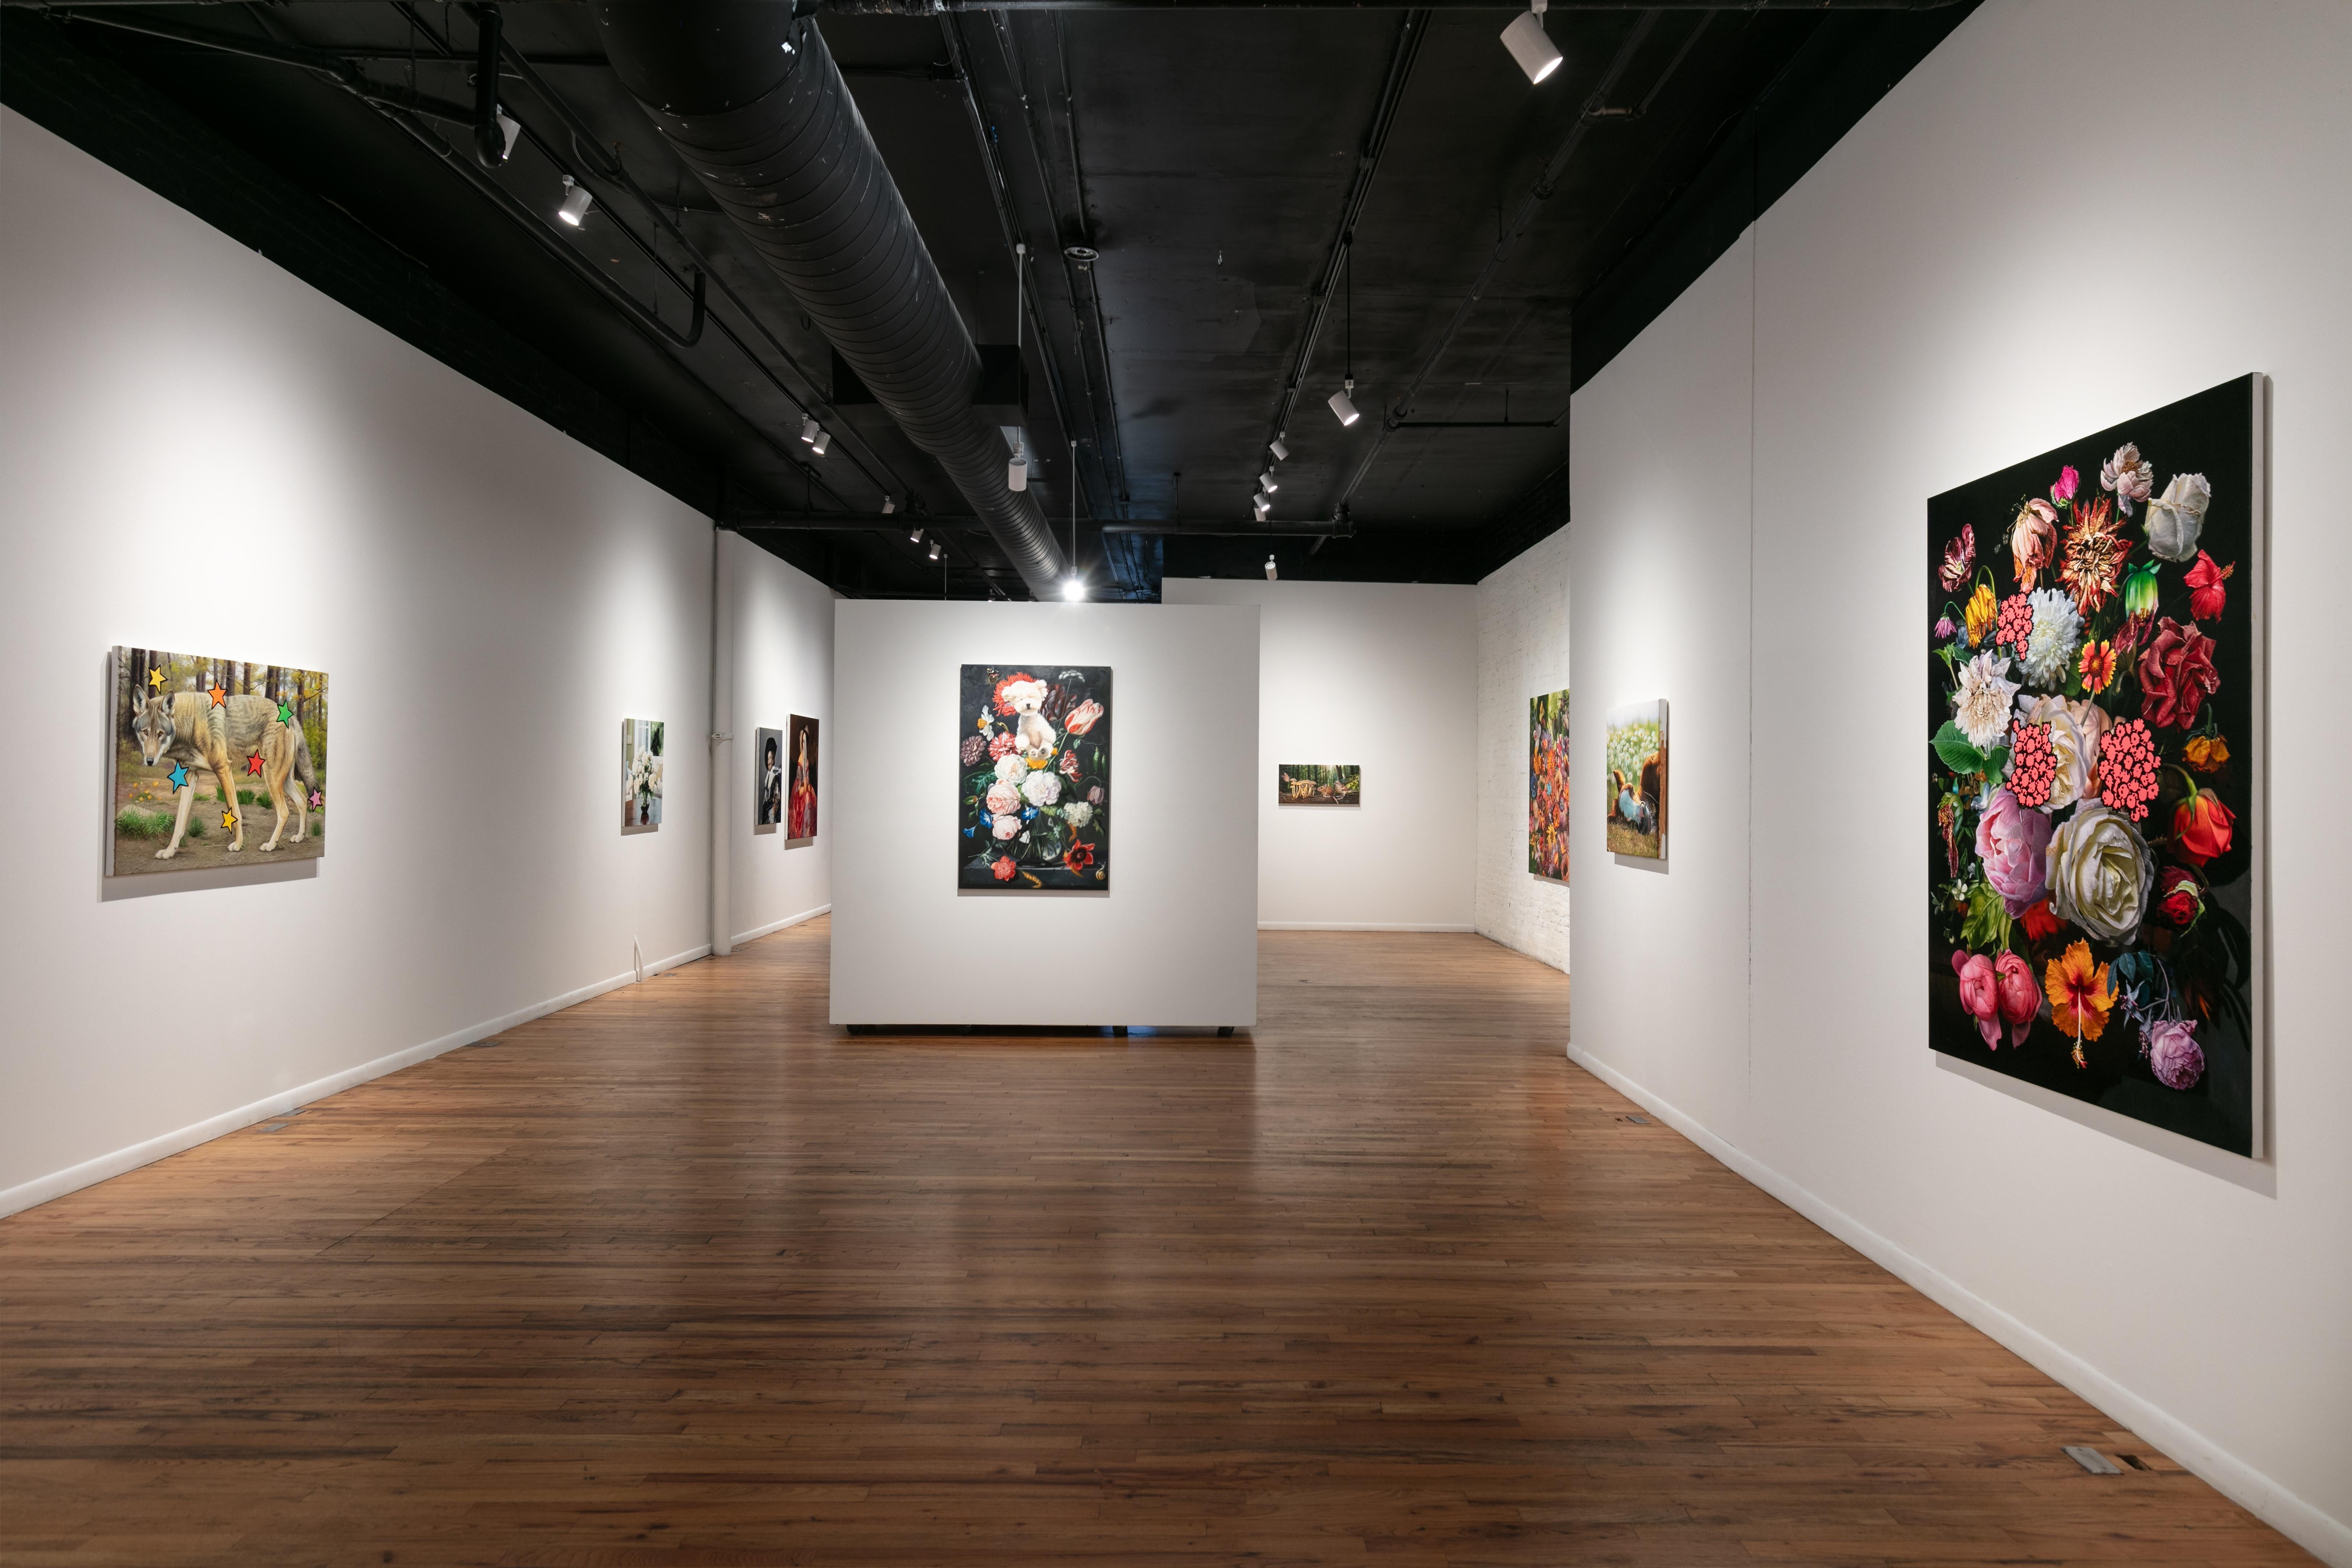 Three Arrows ist ein atemberaubendes Blumenstillleben des amerikanischen Malers Marc Dennis. Dennis, der für seine üppigen und oft humorvollen Werke in seinem charakteristischen hyperrealistischen Stil bekannt ist, hat hier ein Werk geschaffen, das